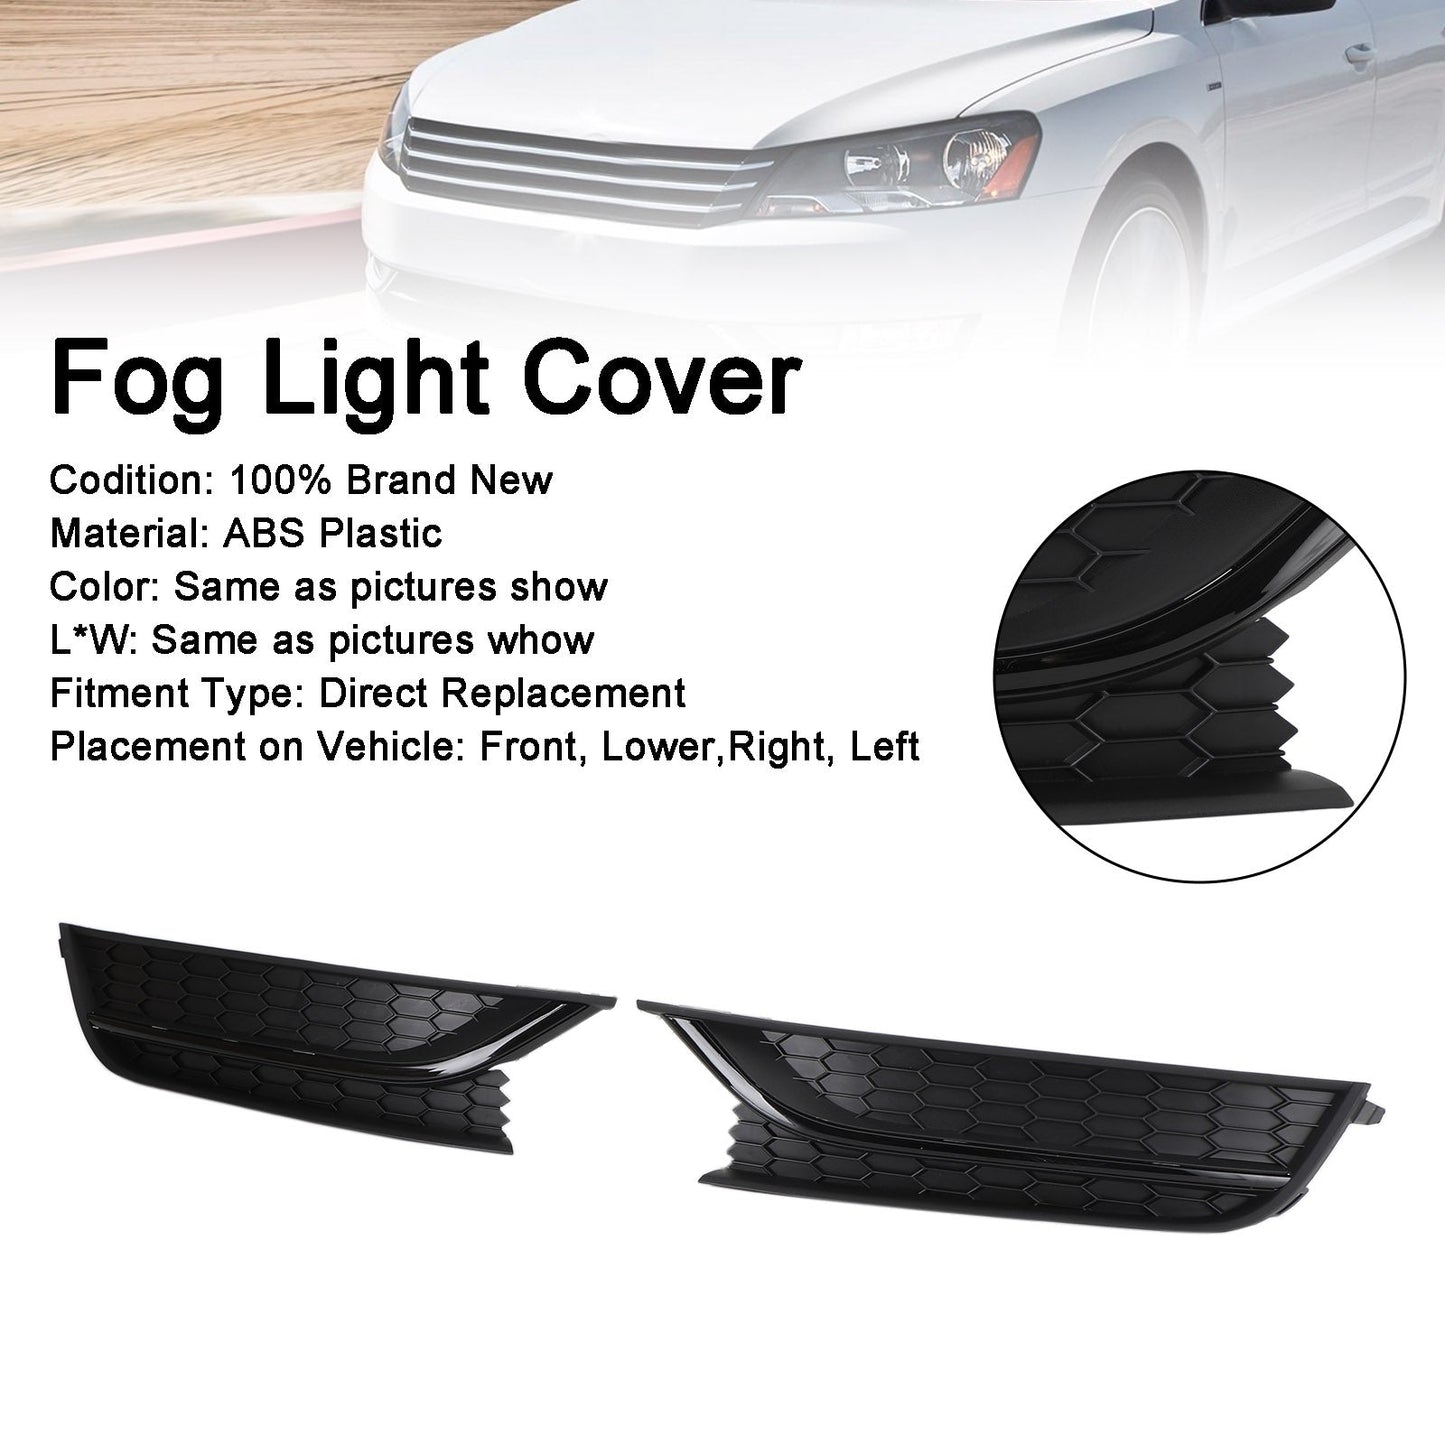 2PCS Volkswagen Passat 2012-2015 Couvercle de phare antibrouillard avant Noir